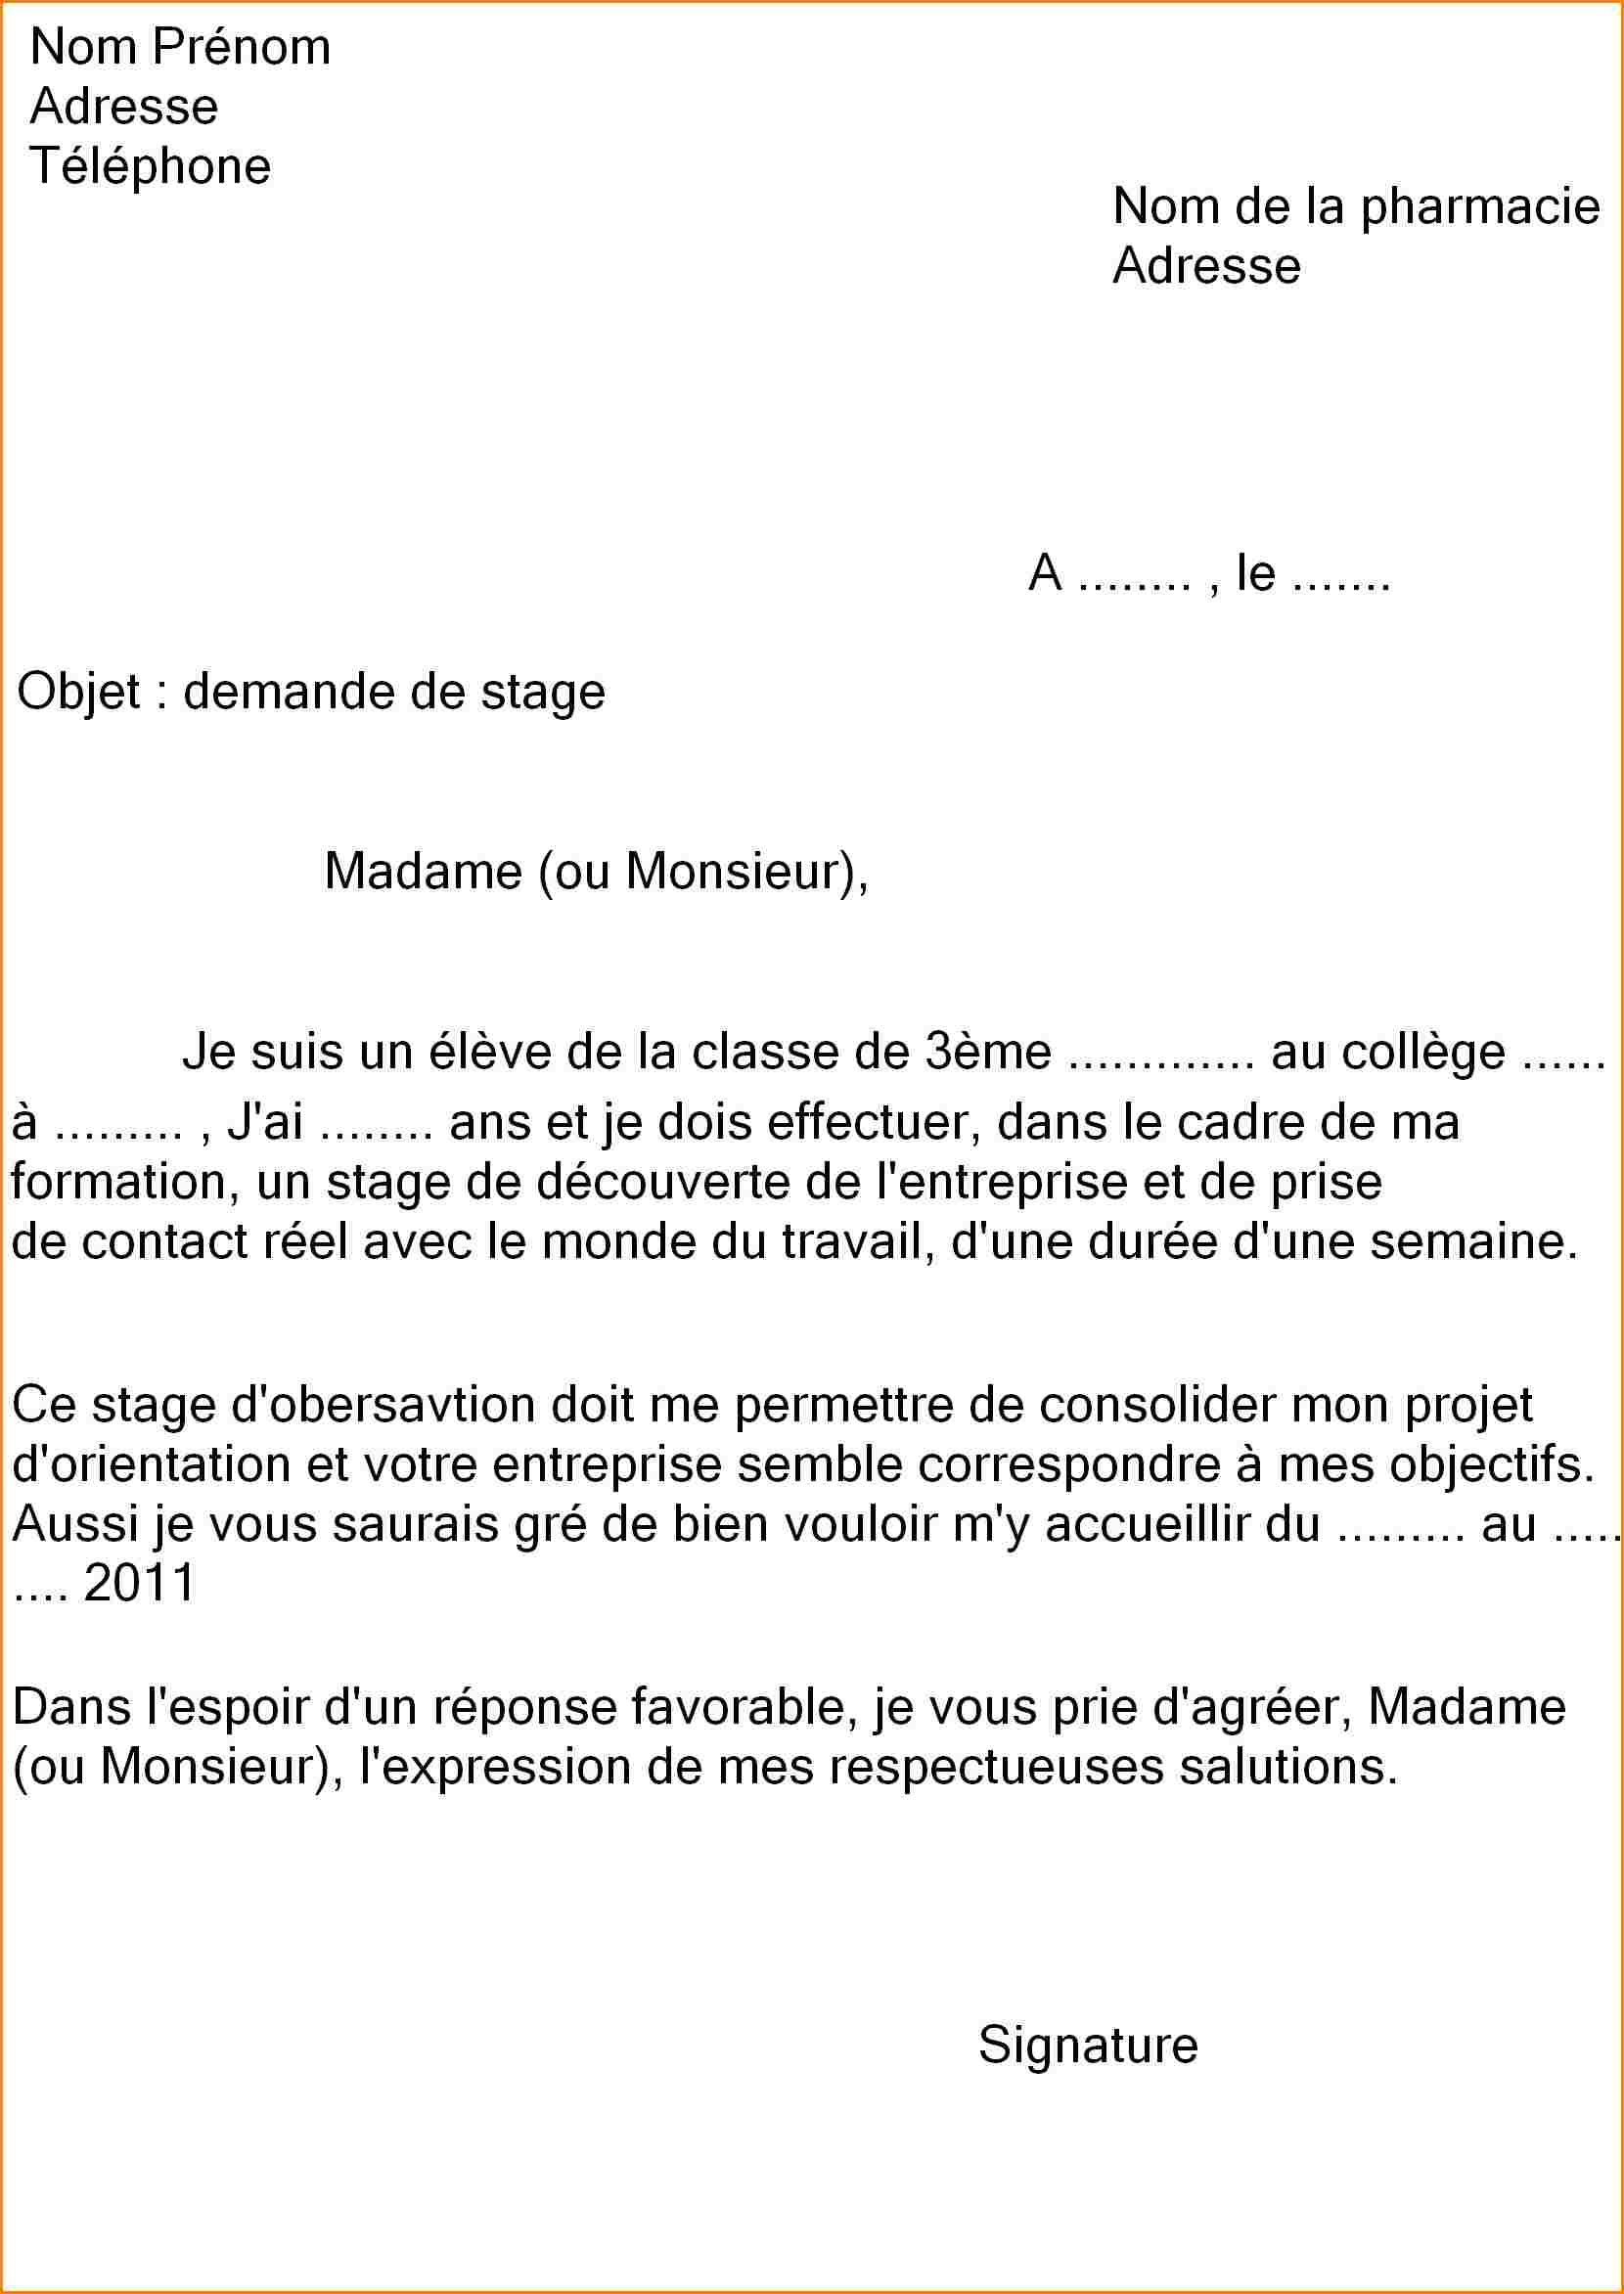 نموذج طلب عمل بالفرنسية Demande d'emploi